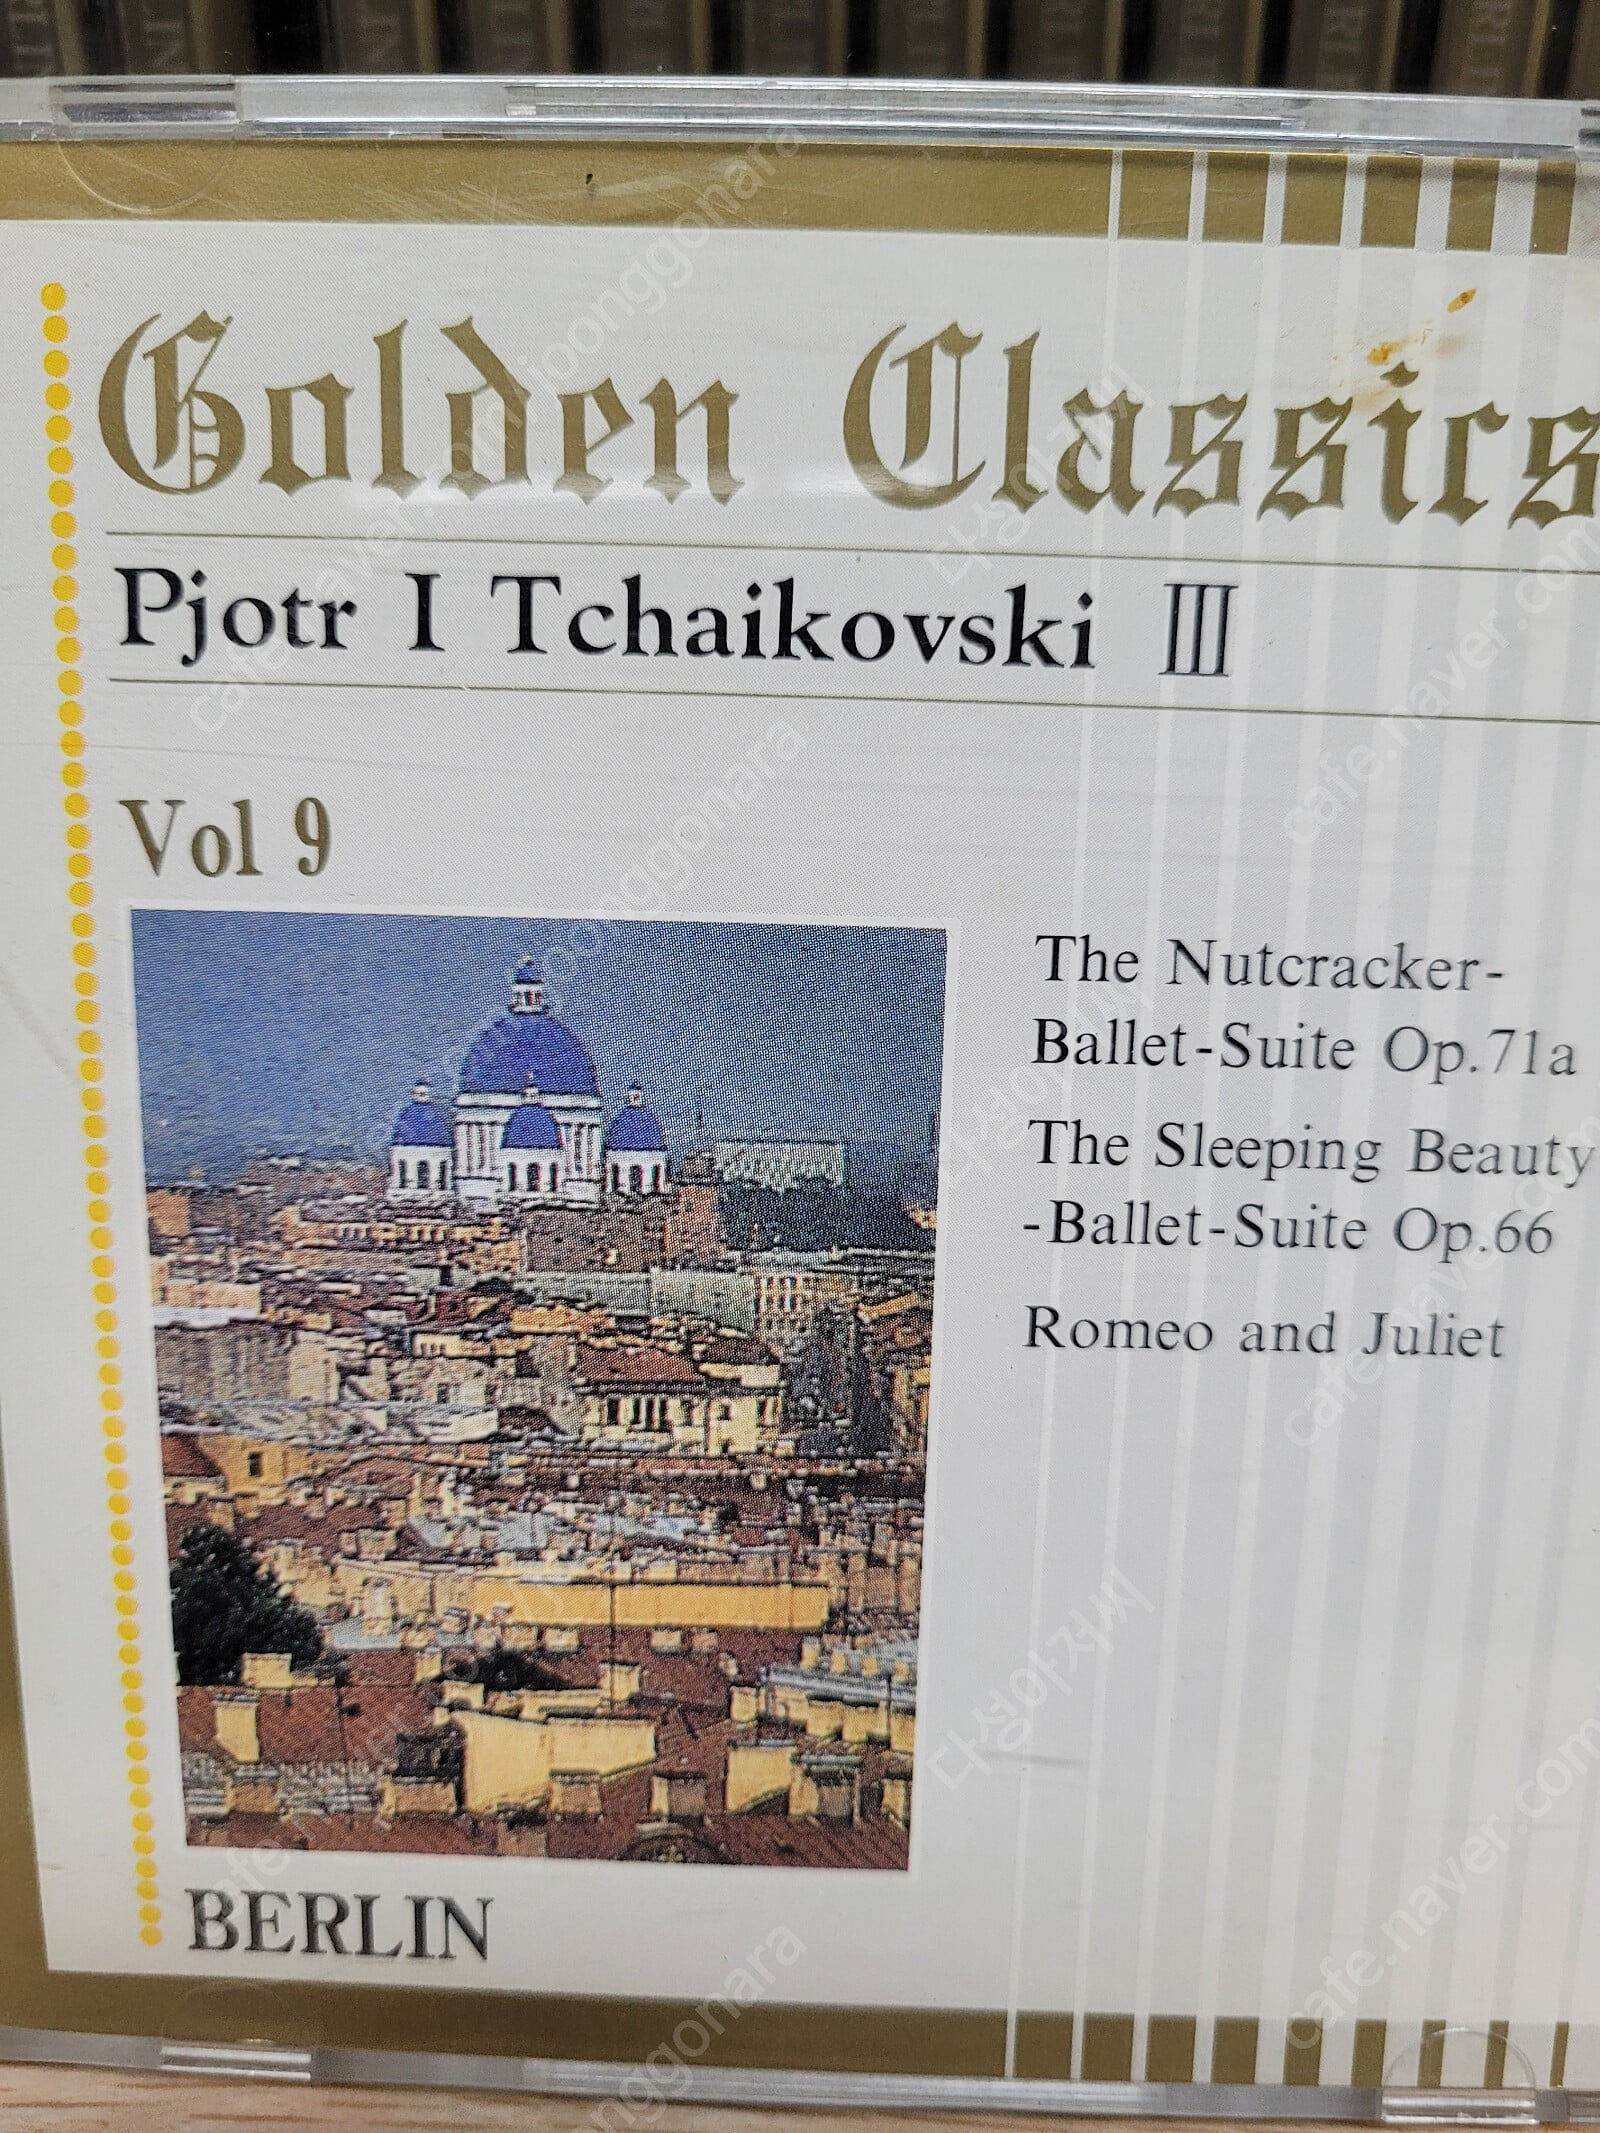 오케스트라.협주곡 등등 Golden Classics berlin Vol.1-30 세트 중 (6번,10번 분실)/목재,유리 케이스 포함 //합28ro CD//2015.made by germany-실사진,,아래설명